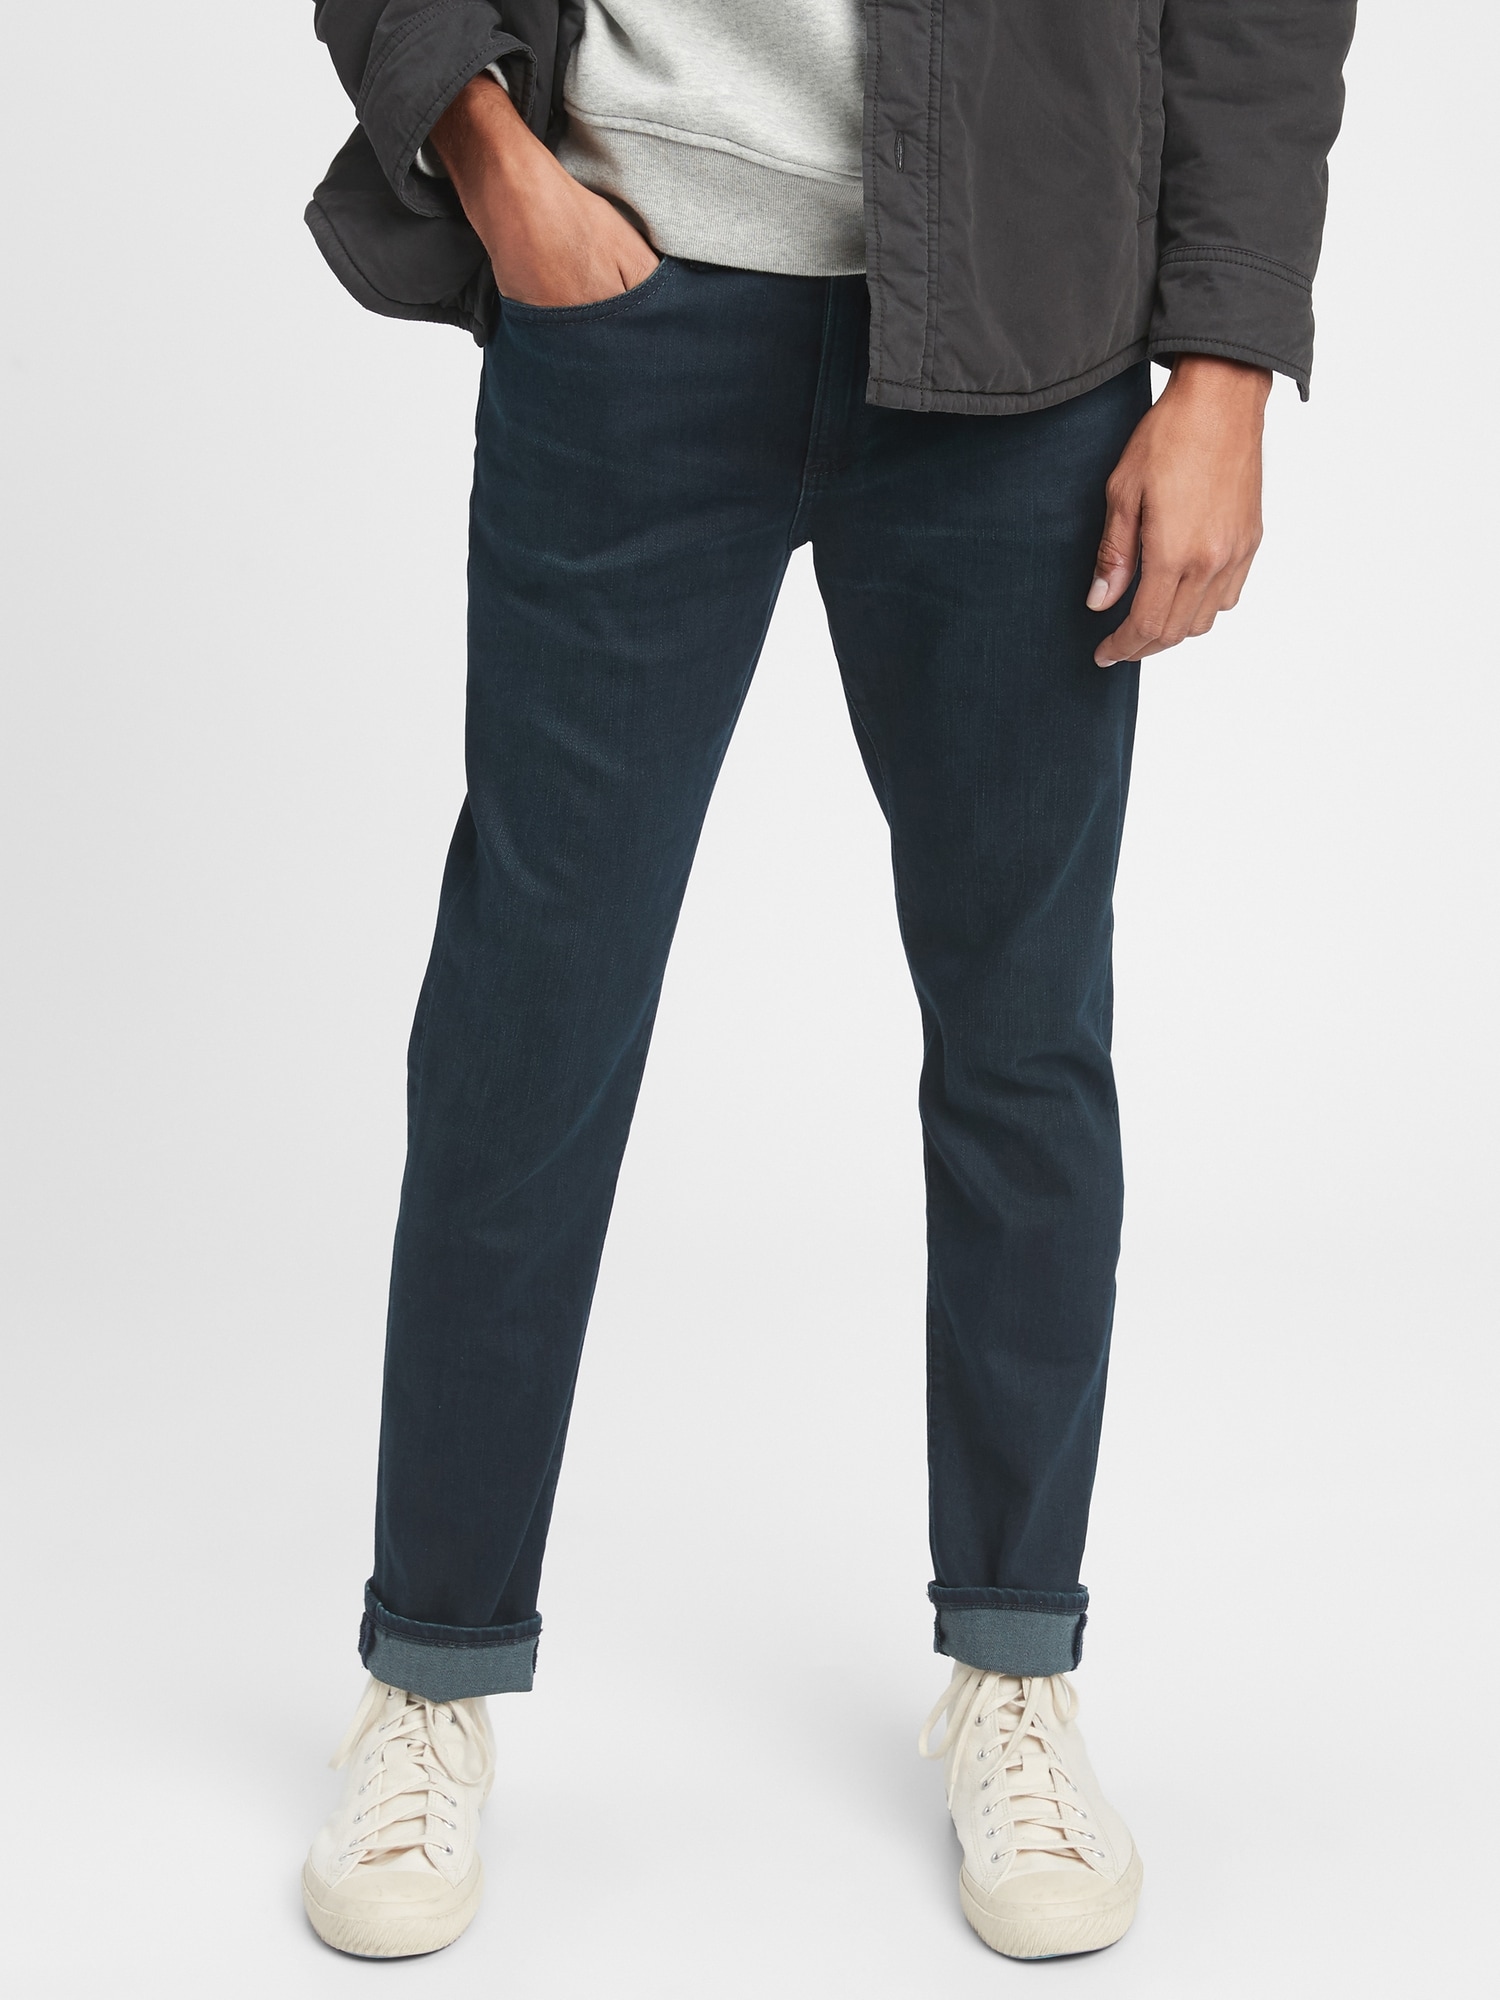 Gap Flex Soft Wear Slim Jean Pantolon. 4